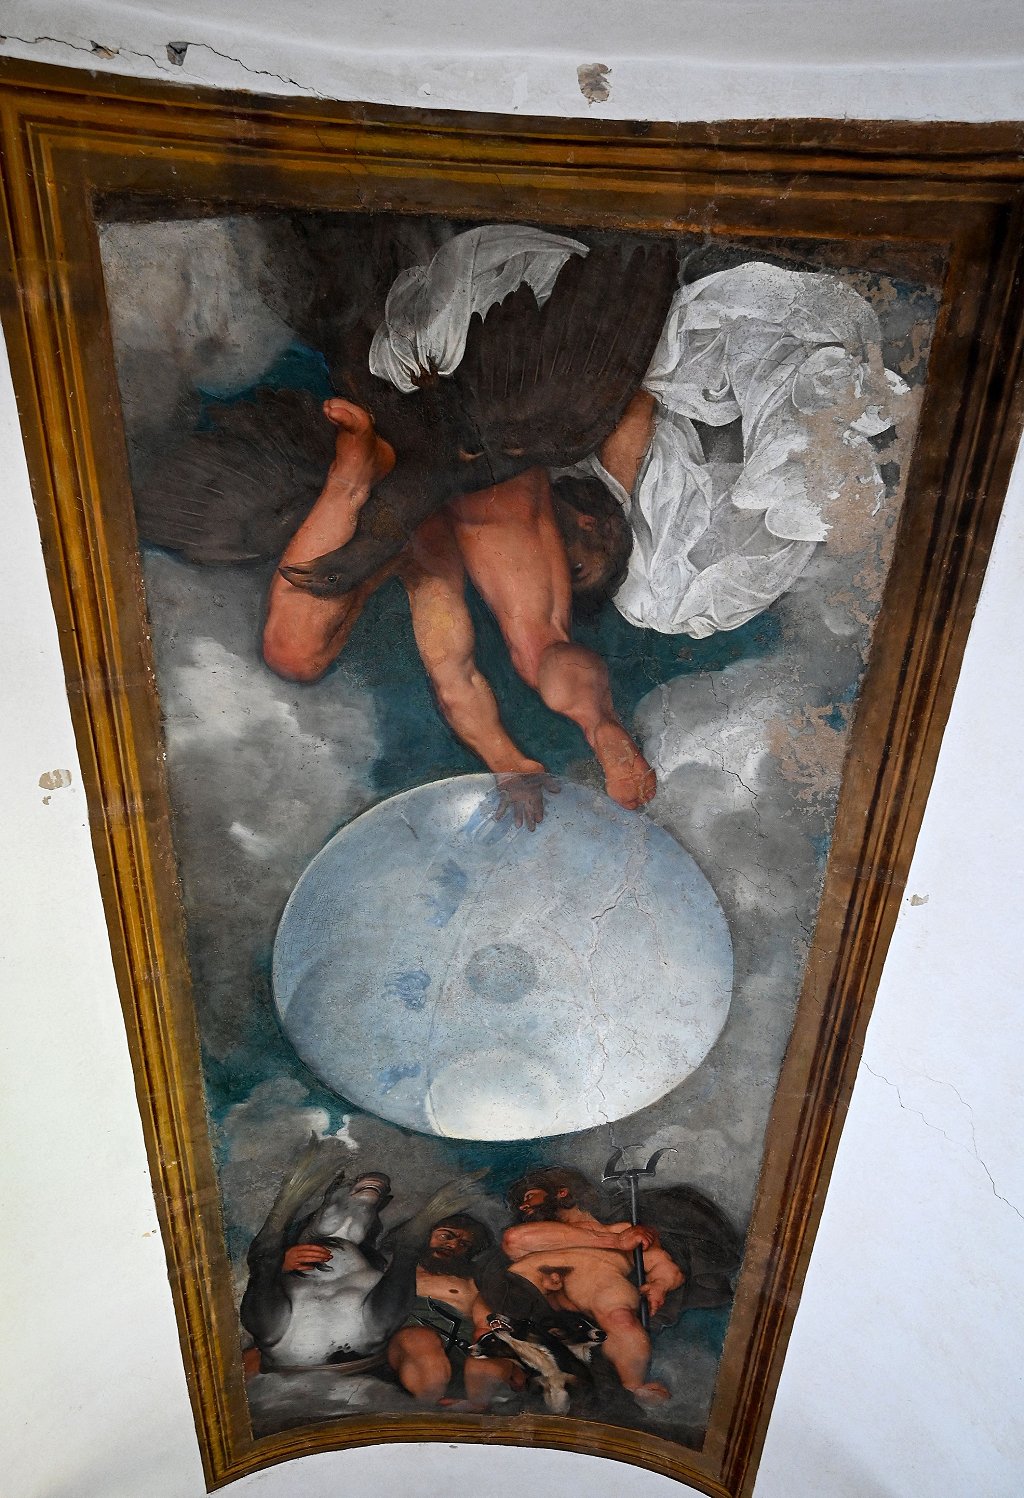 "Júpiter, Neptuno y Plutón", el único fresco de Caravaggio.